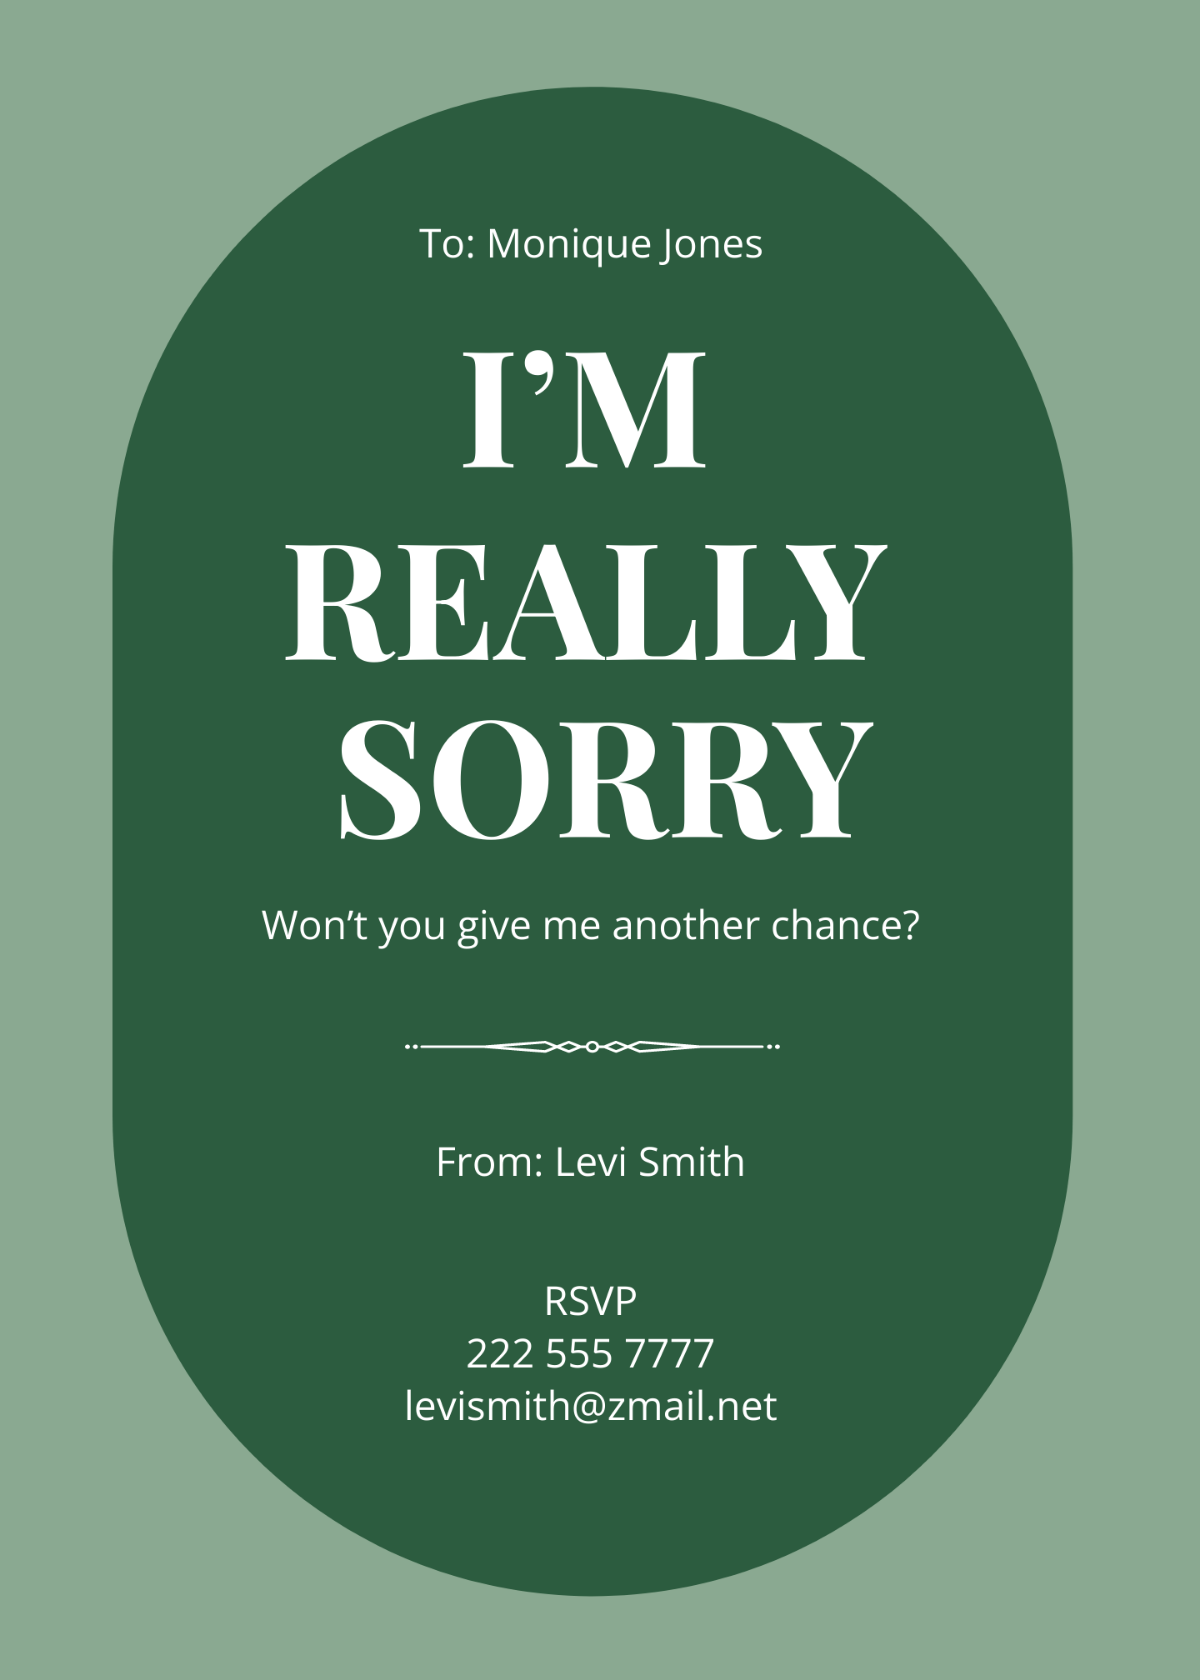 Printable Apology Card